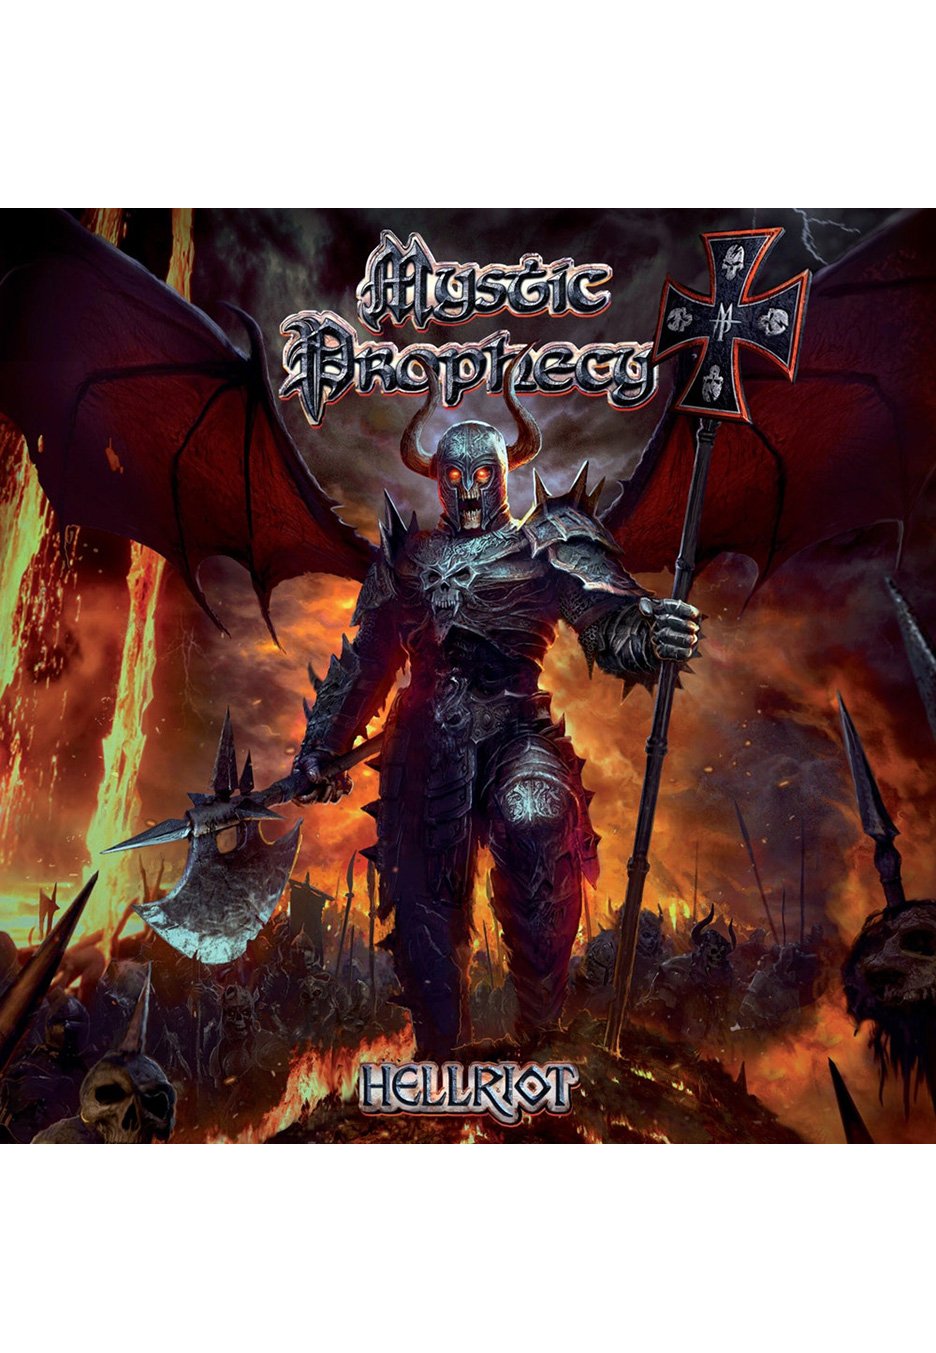 Mystic Prophecy - Hellriot - CD Boxset